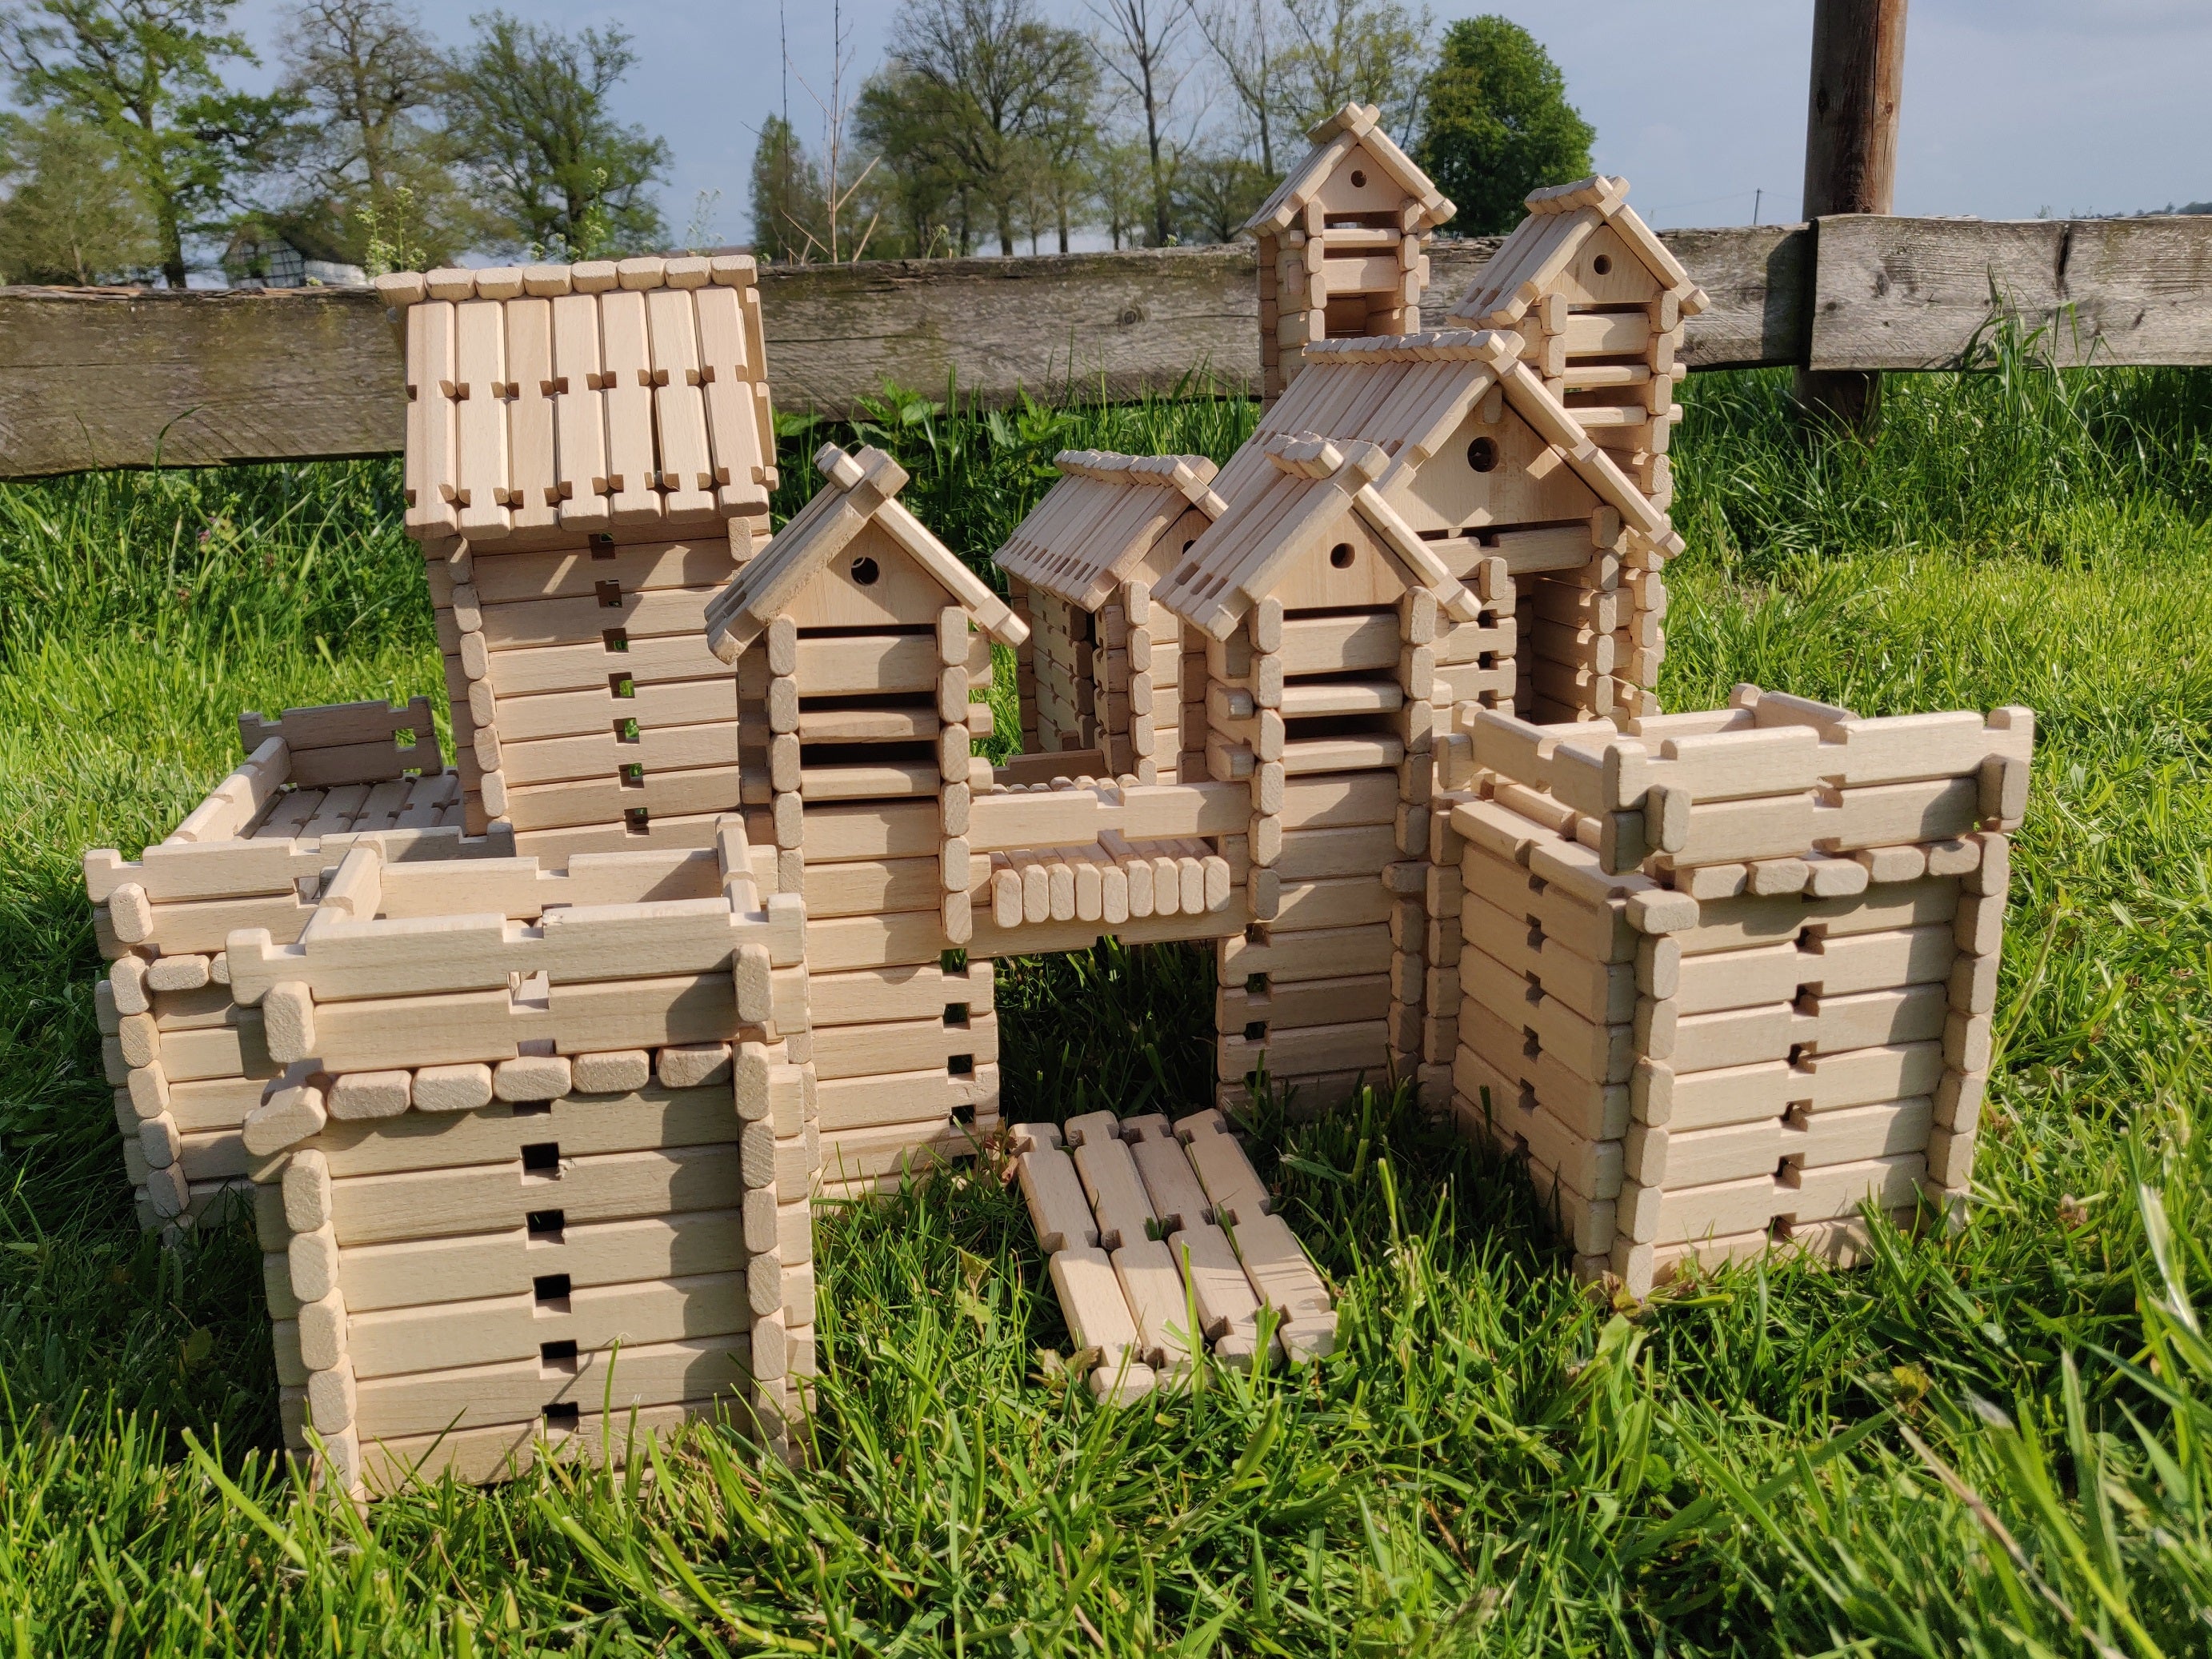 LOGO-BURG kit de jouets en bois, blocs de construction en bois